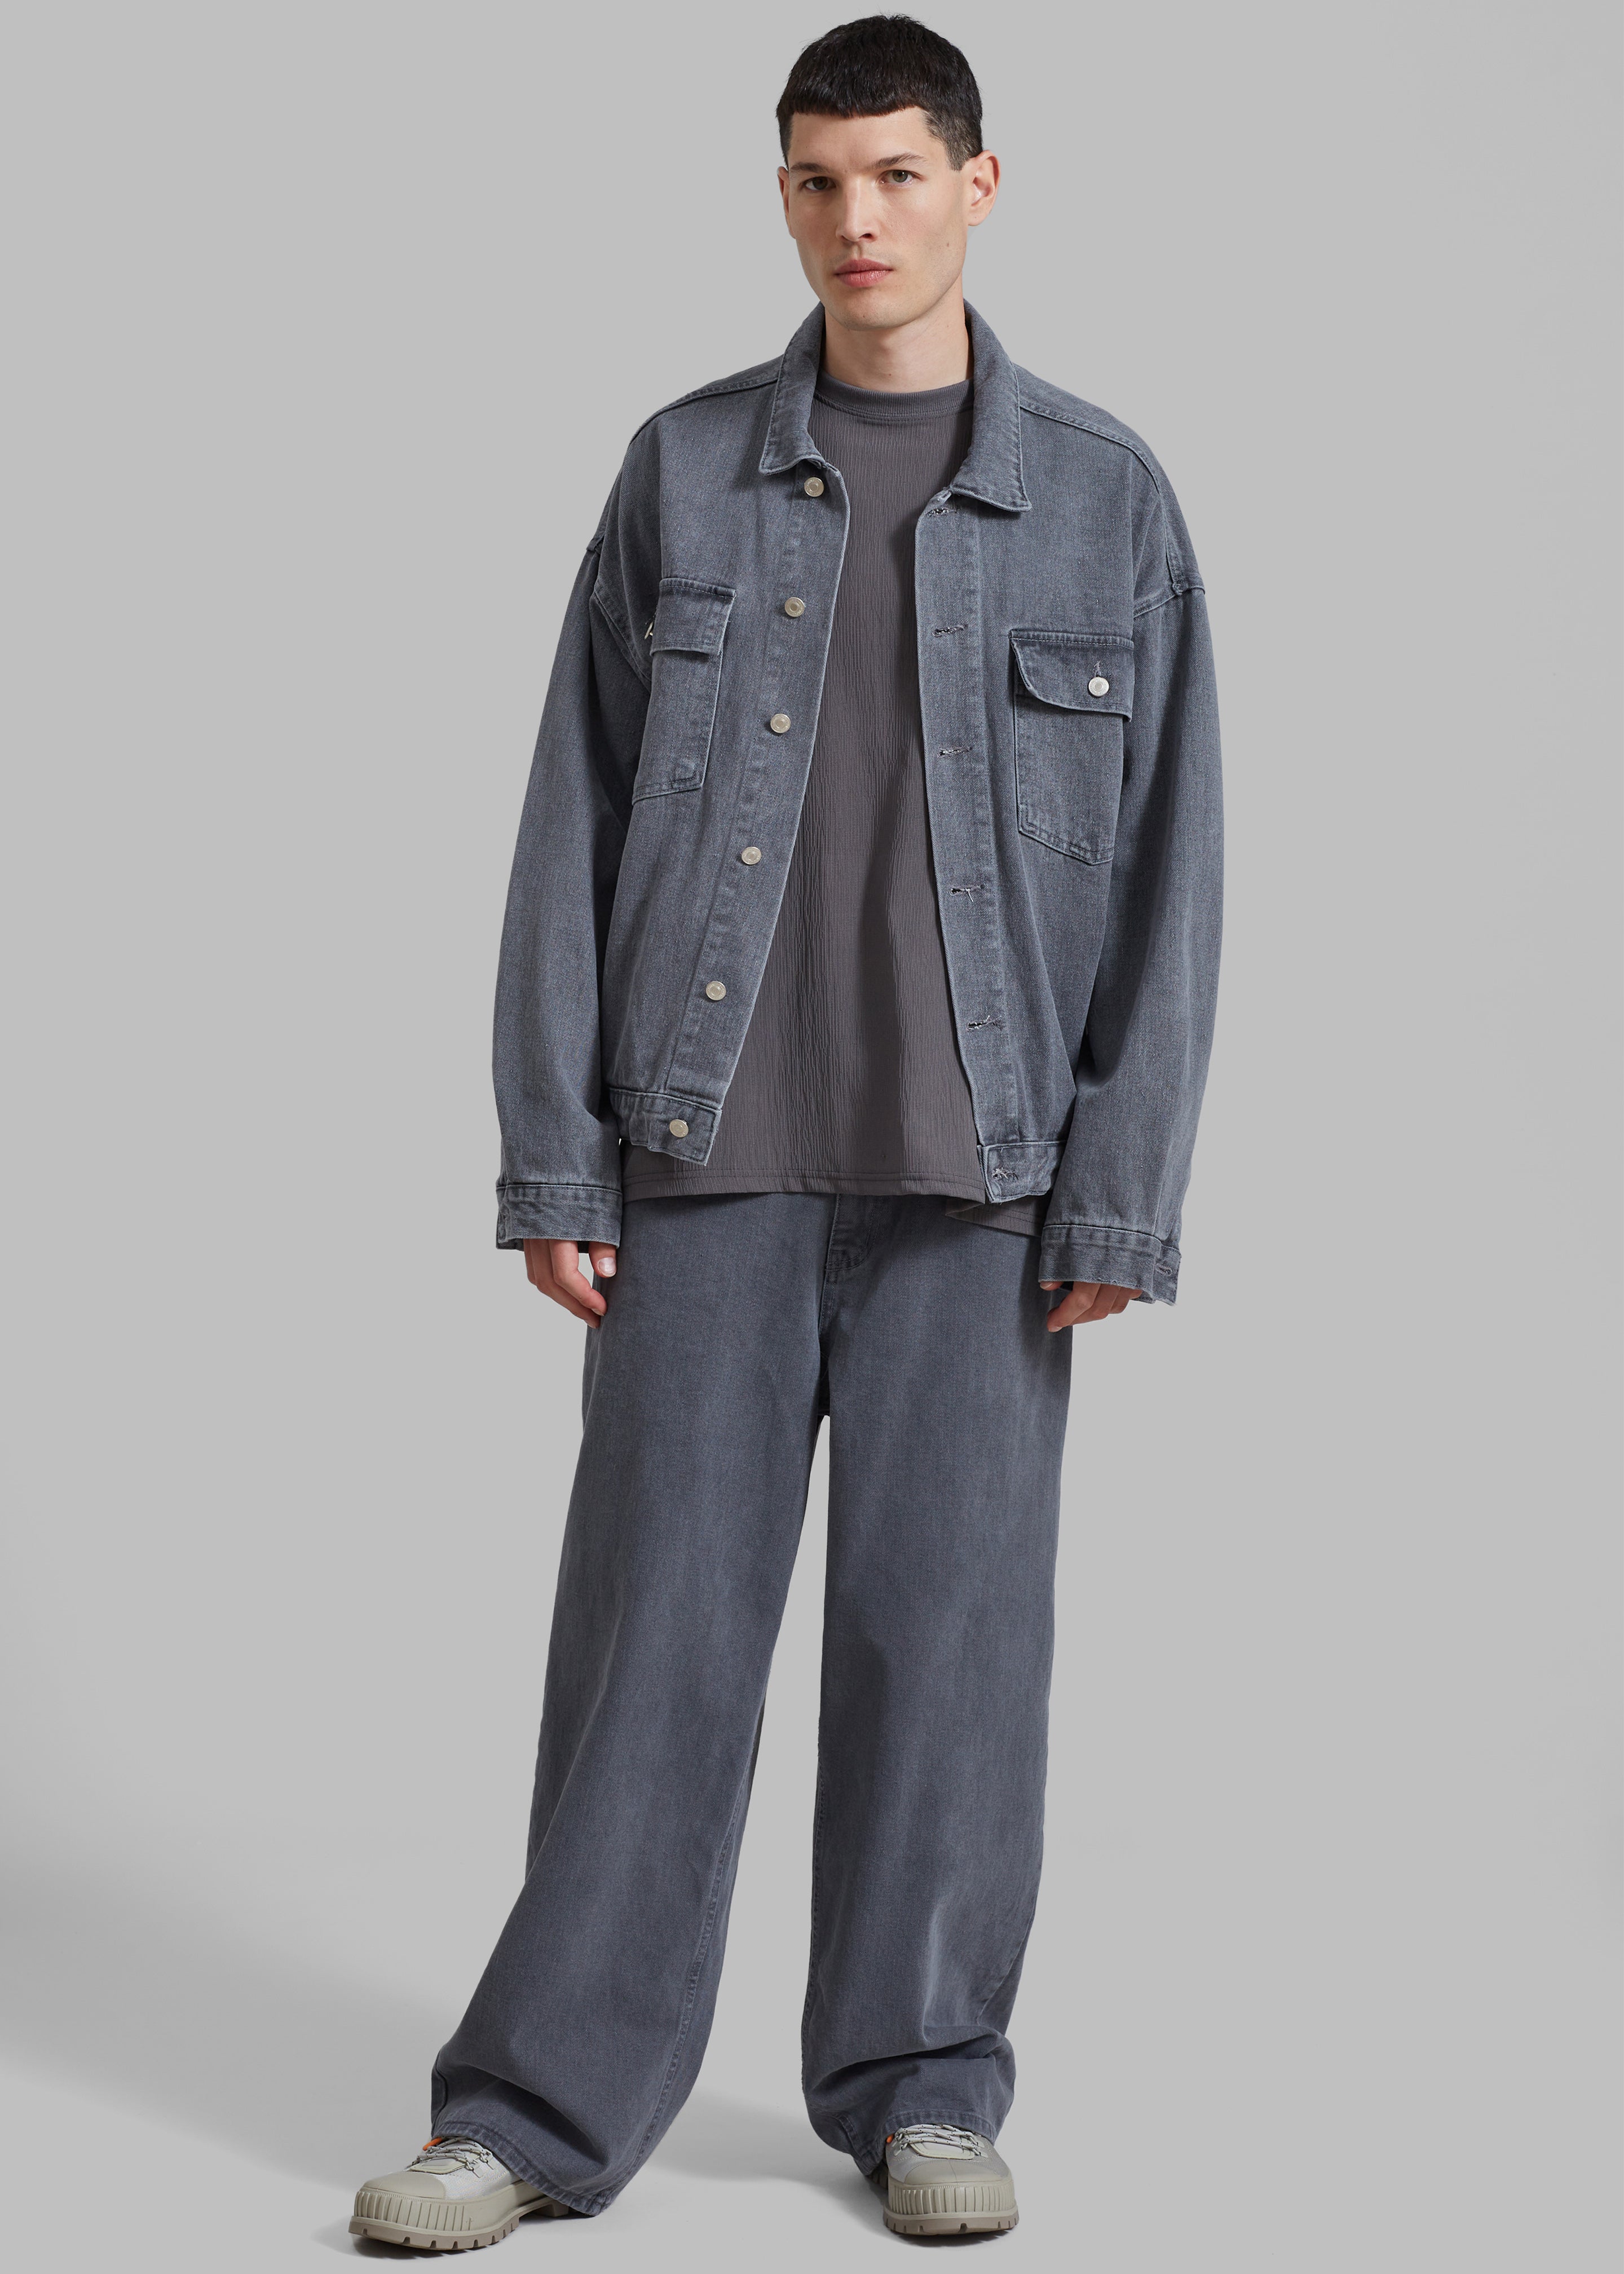 Connor Oversized Denim Jacket - Grey Wash - 3